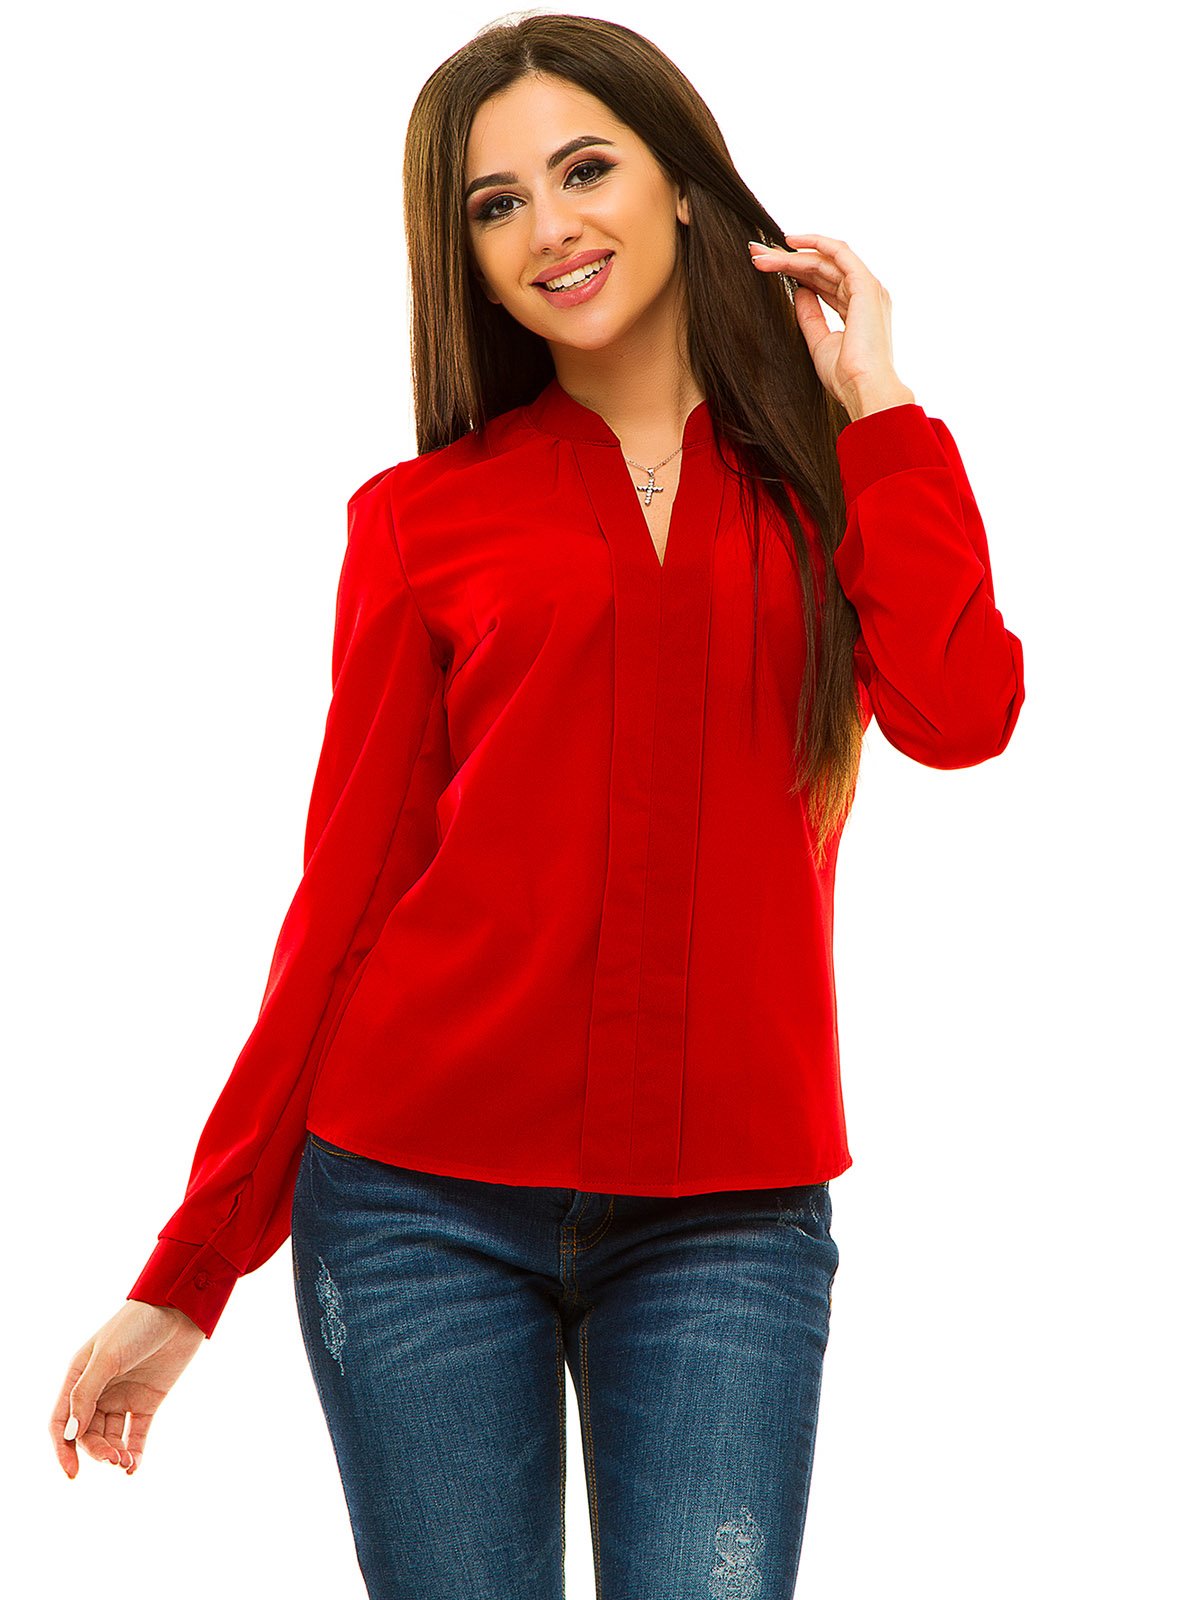 Красные блузки женская. Красная блузка. Красная кофта женская. Женщина в красной блузке. Блуза женская красная.